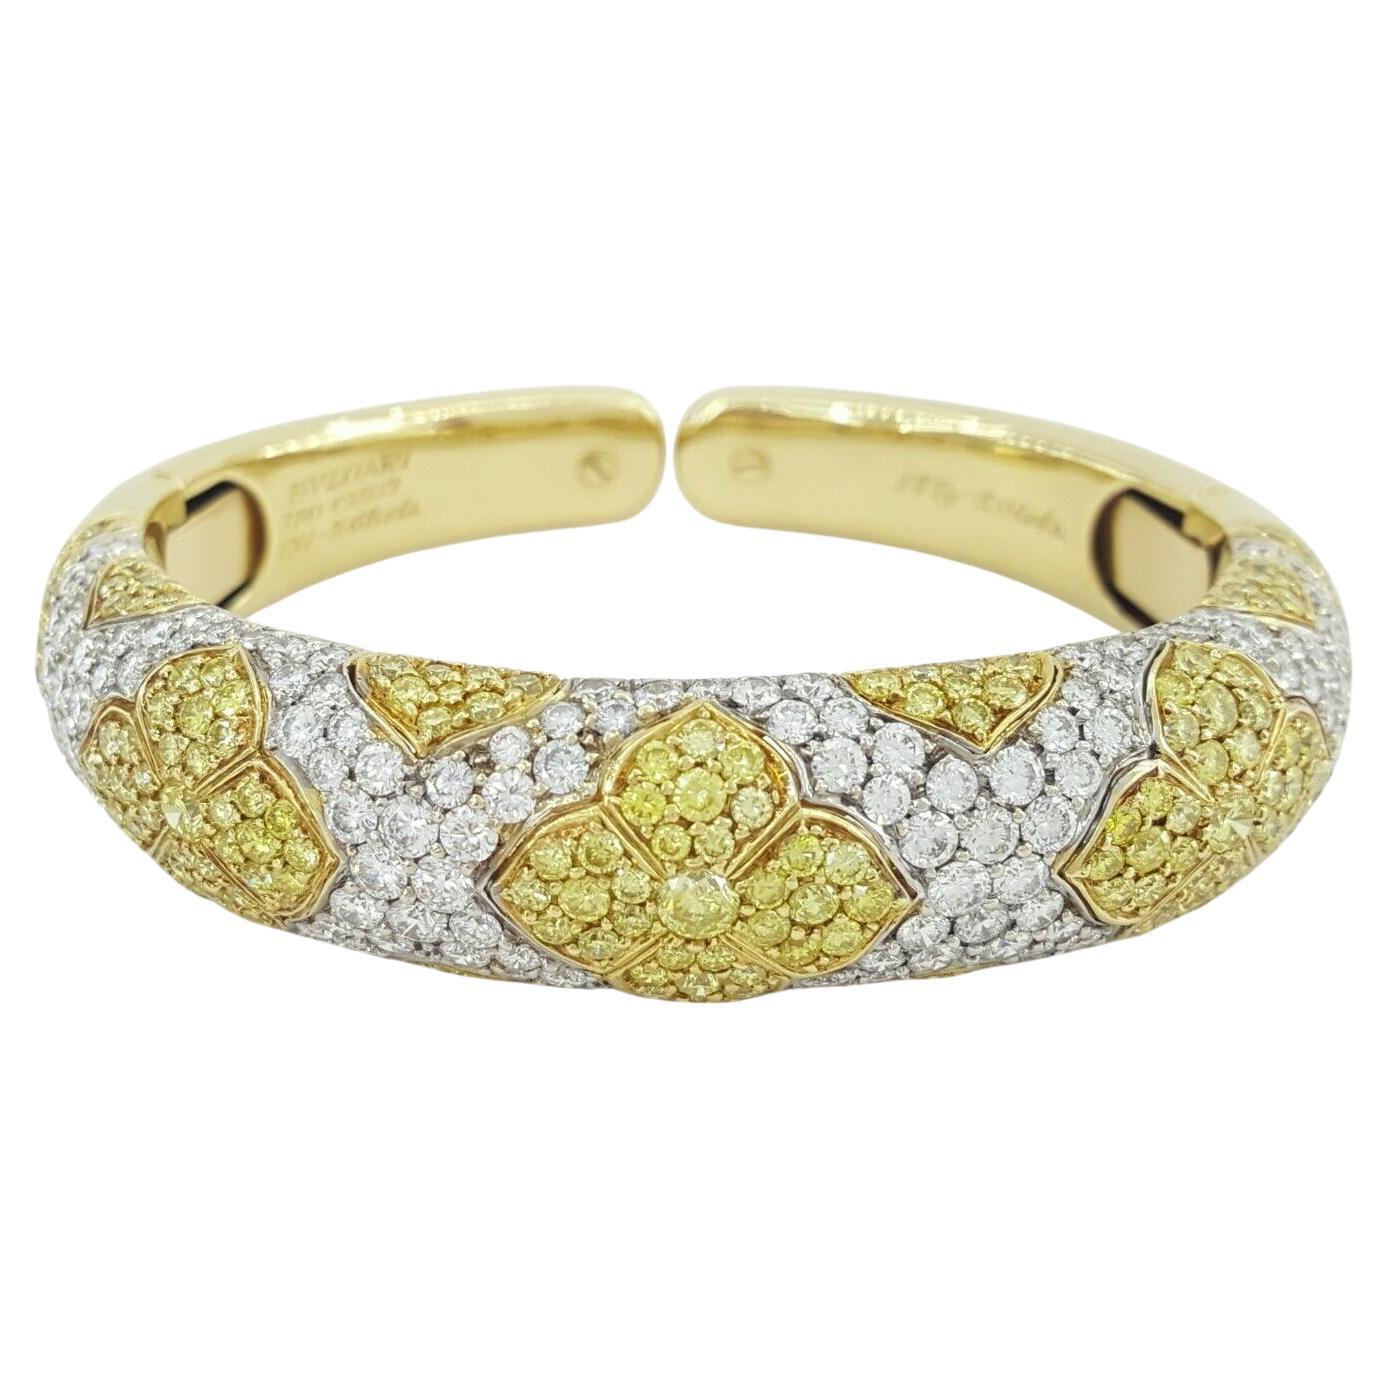 Un authentique bracelet-bracelet conçu par Bulgari Roma.
5 carats de diamants jaunes fantaisie
5 carats de diamants blancs
